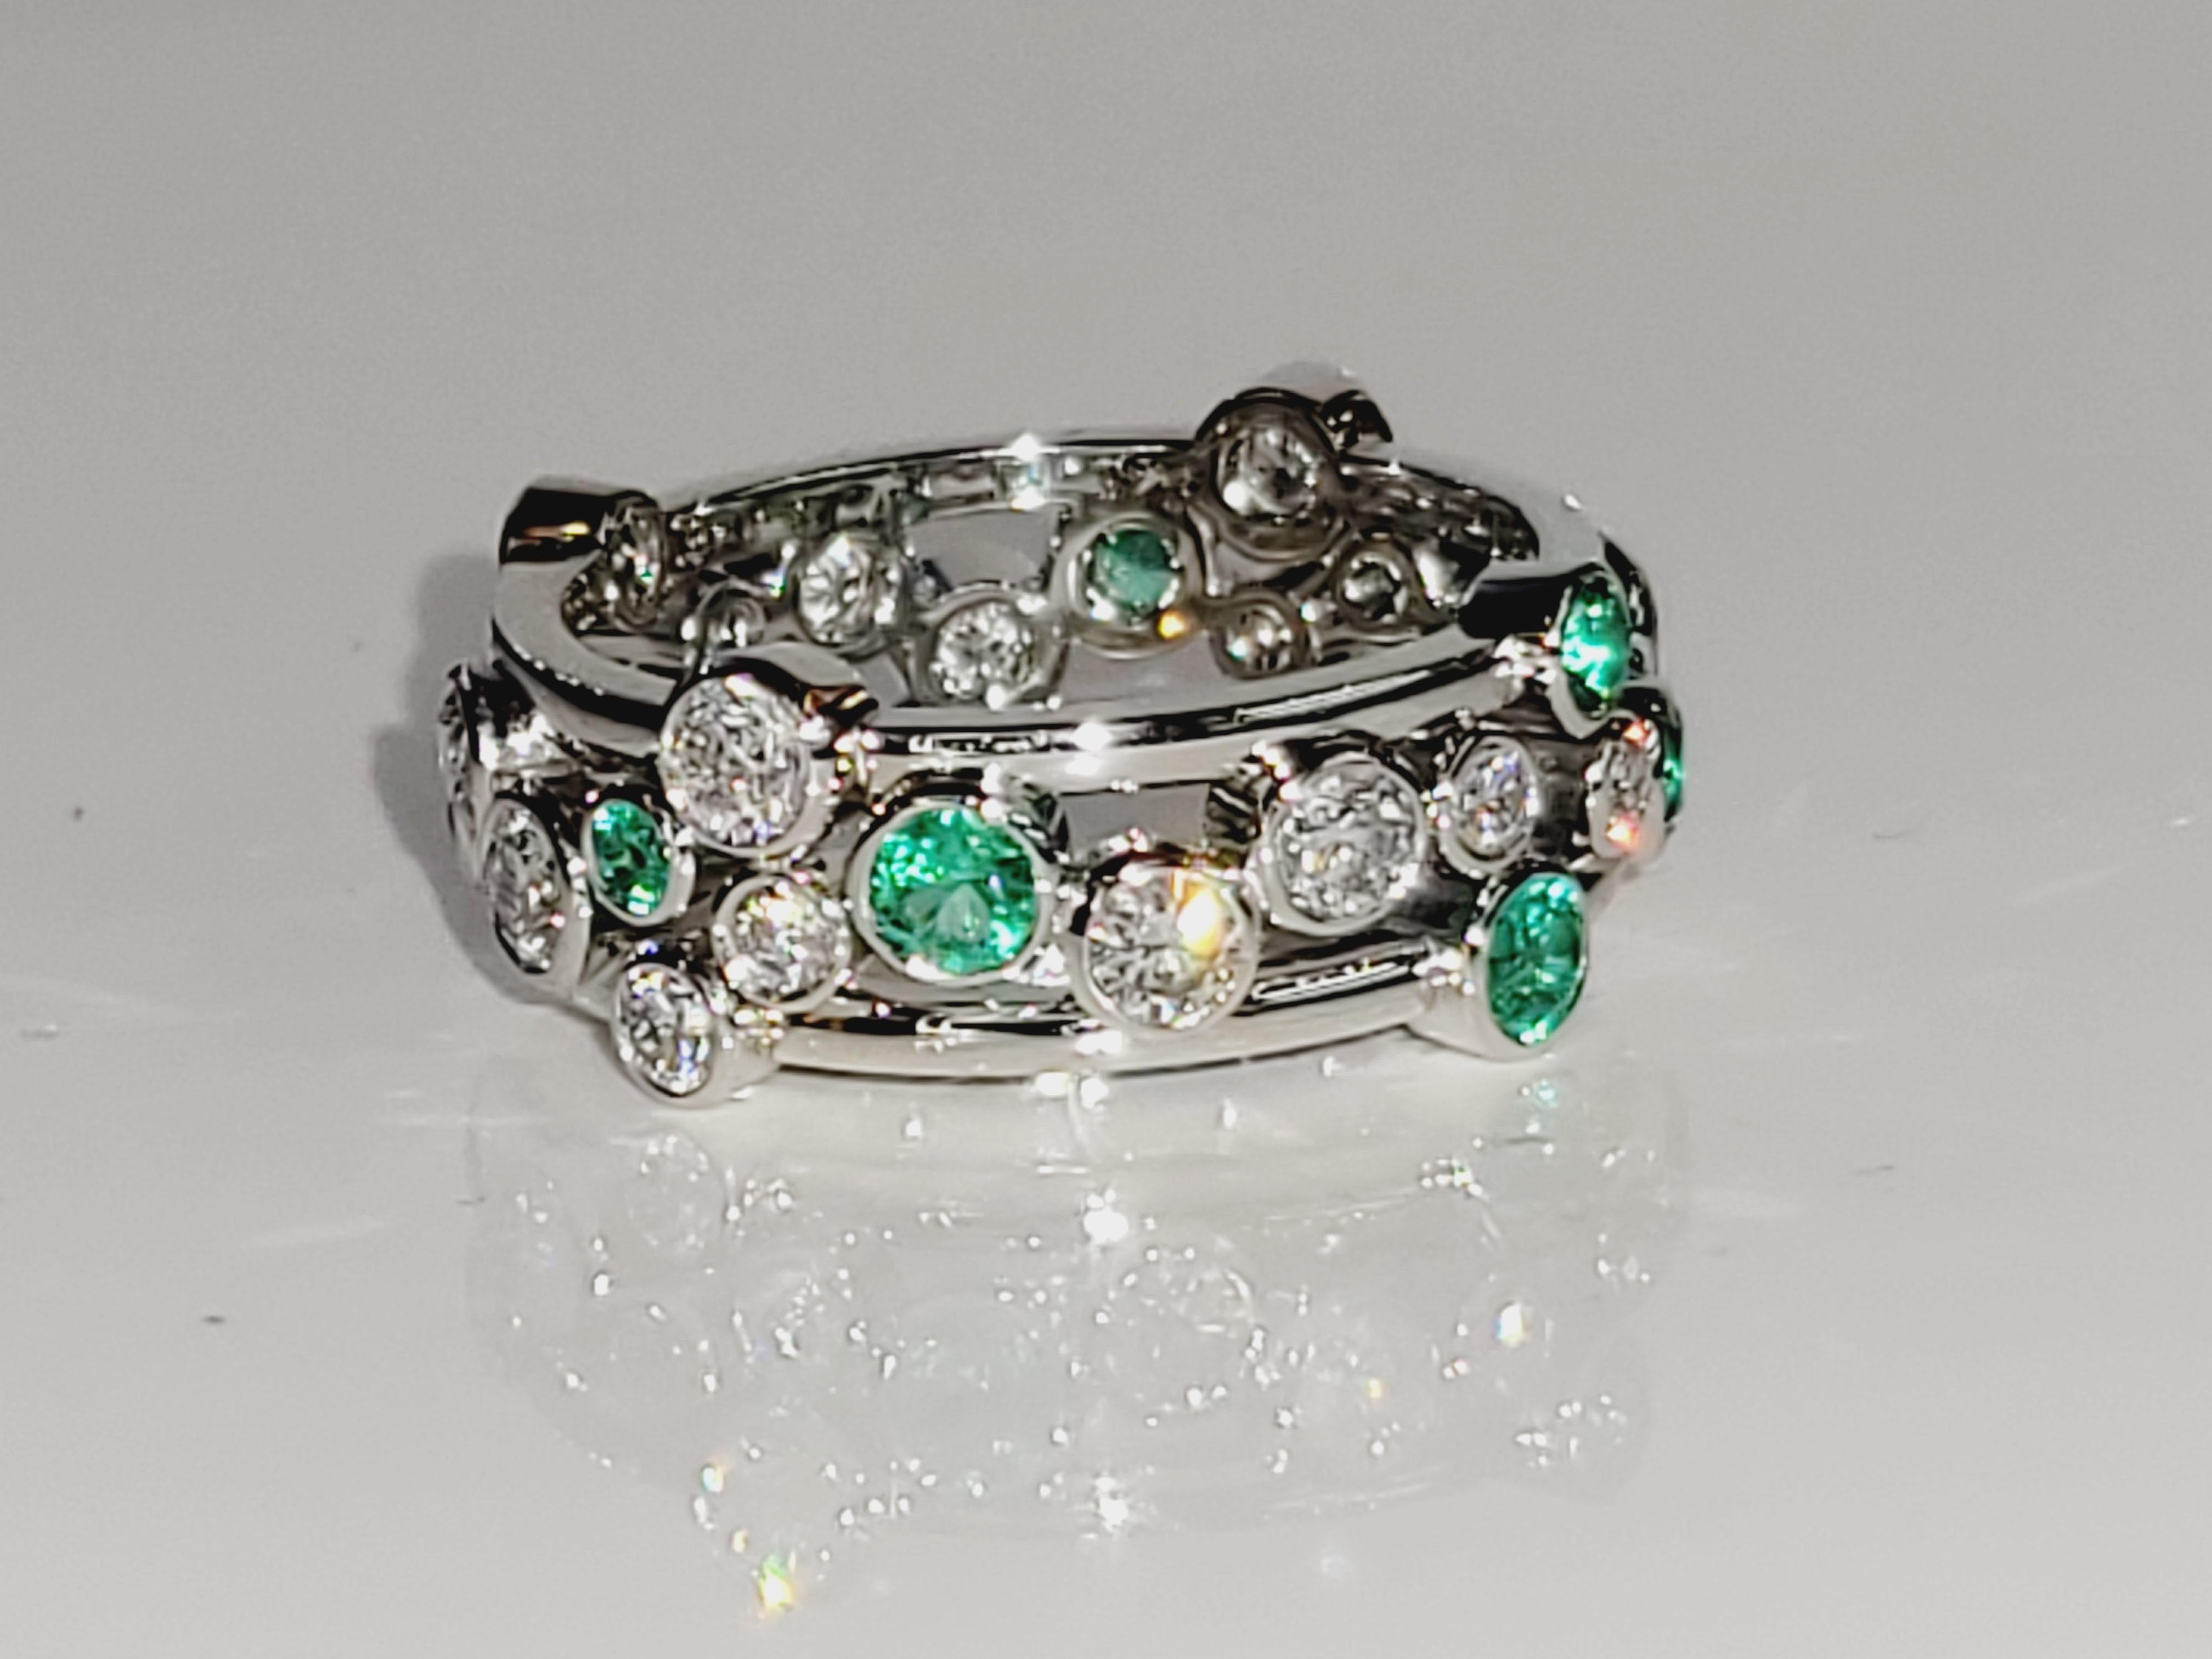 Marke Tiffany & co
Zustand Pre-owned
Geschlecht Frauen
MATERIAL Platin
Ring Größe 7
Farbe des Diamanten, Reinheit F-G, vs
Karatgewicht 1,6ct
Ringgewicht 10.1